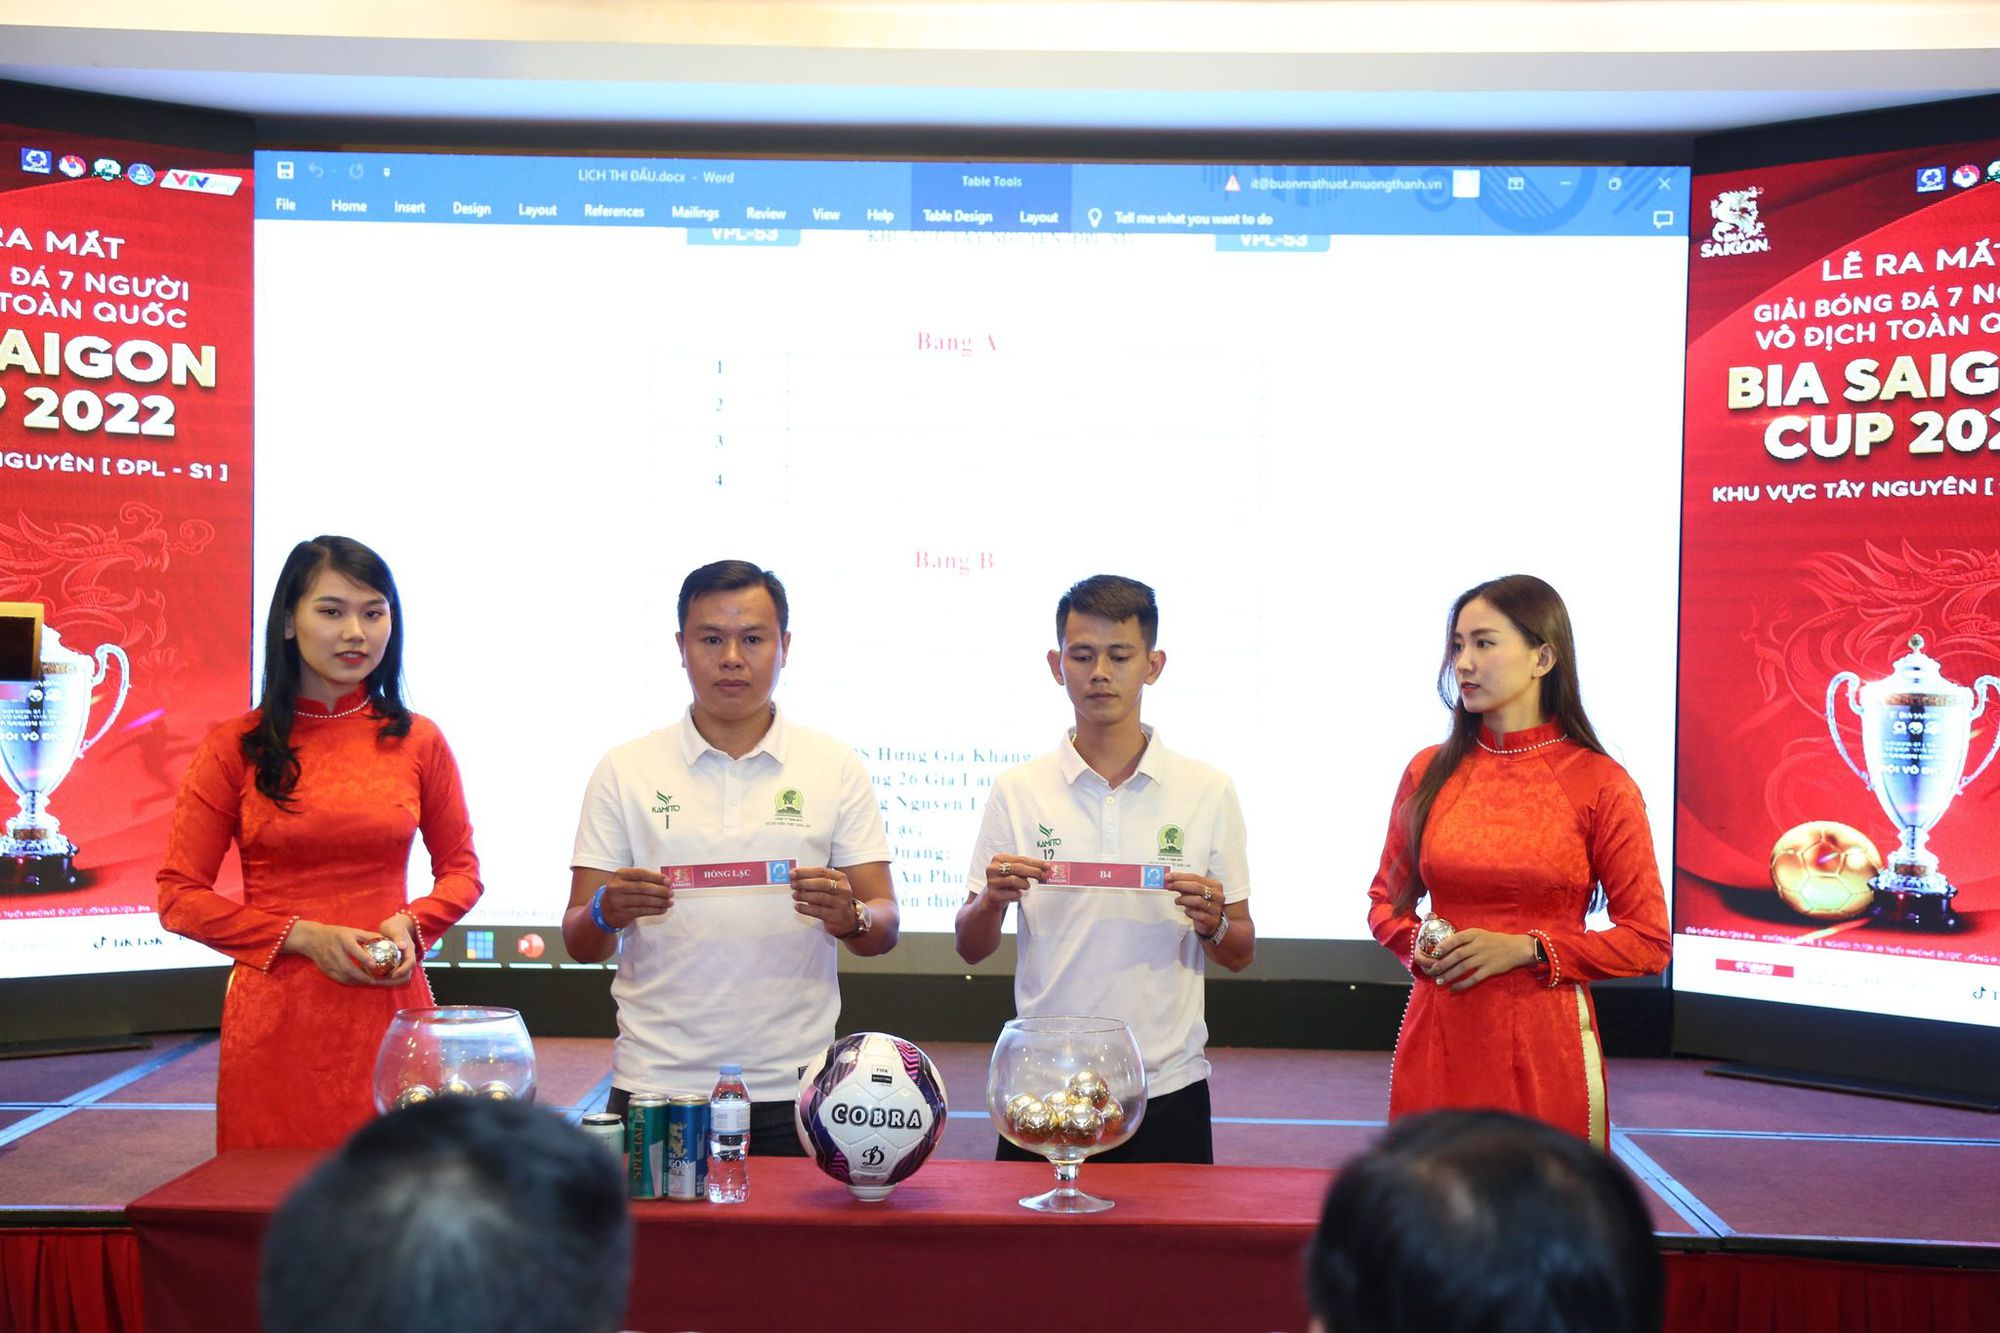 Giải bóng đá 7 người vô địch toàn quốc chính thức khởi động tại Tây Nguyên - Ảnh 2.